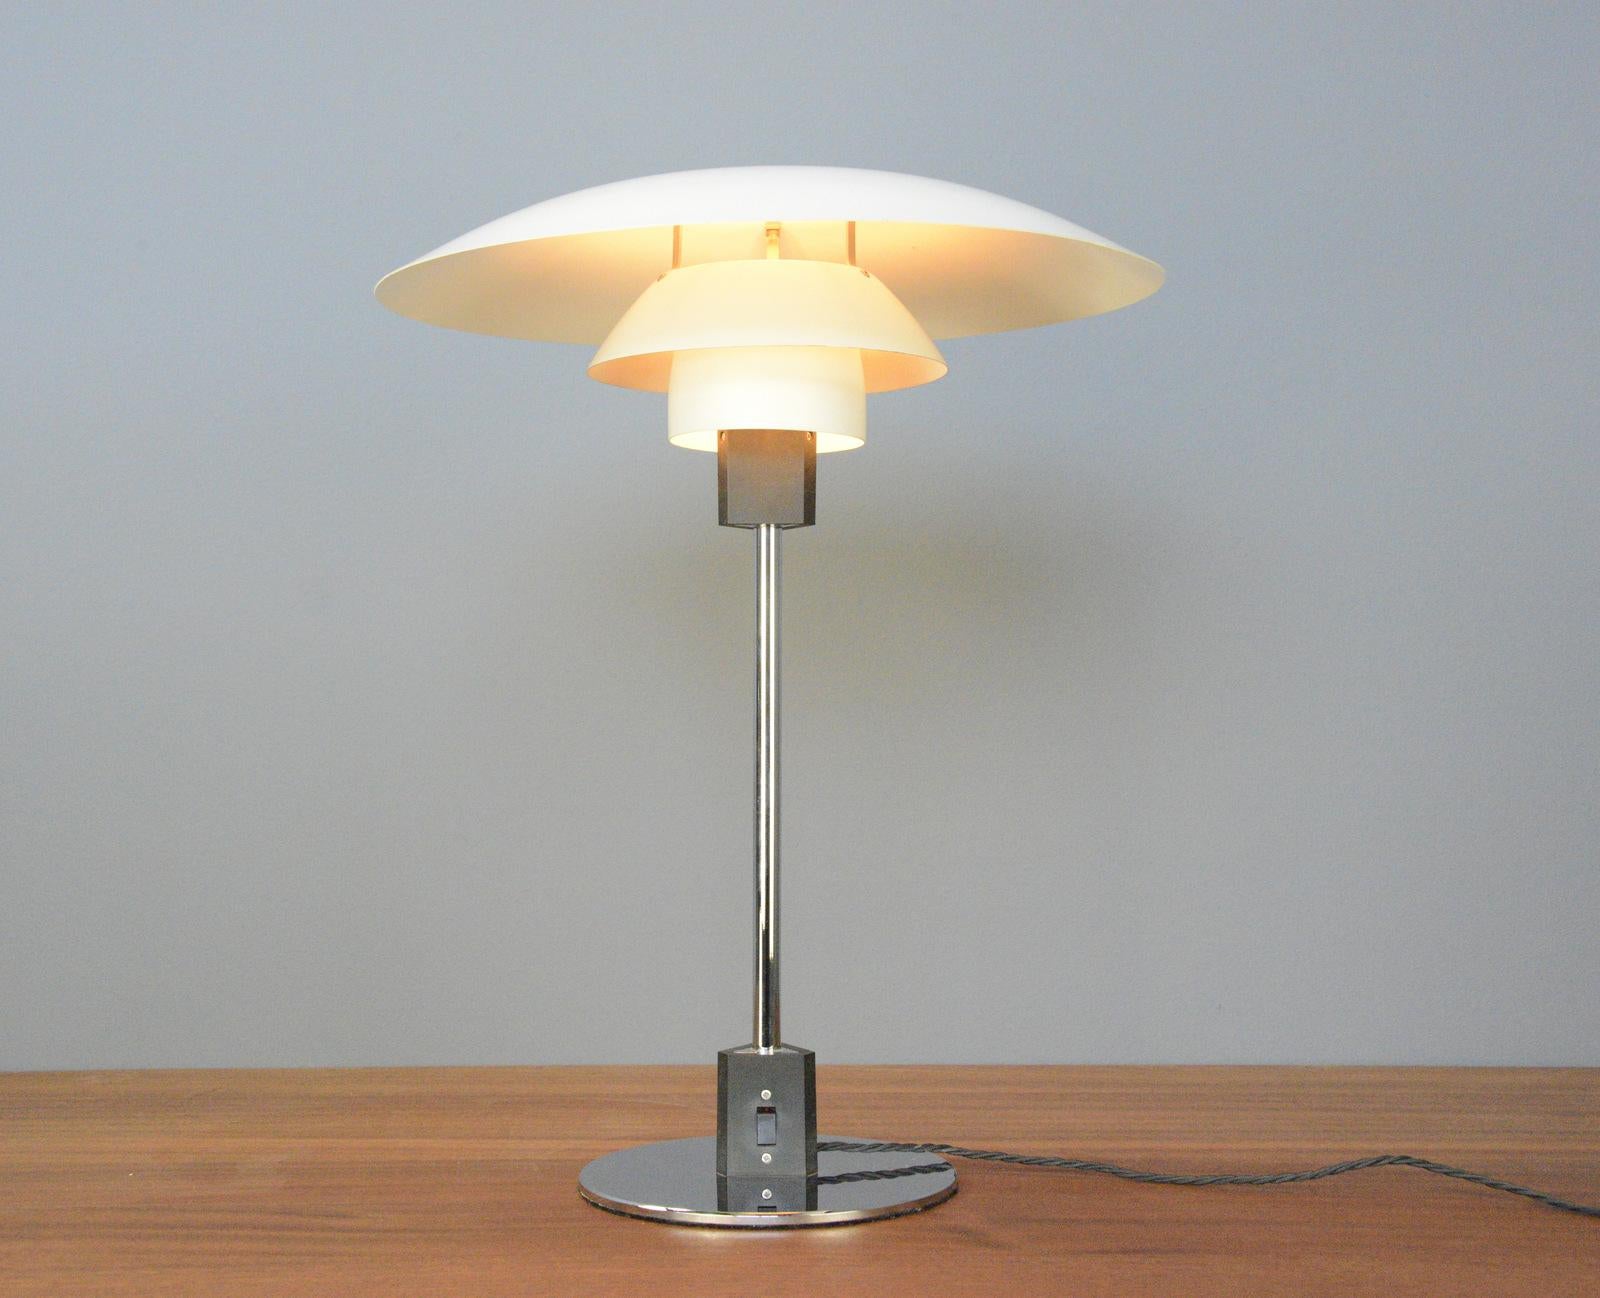 Tischlampe Modell 4/3 von Louis Poulsen, ca. 1960er Jahre (Dänisch)